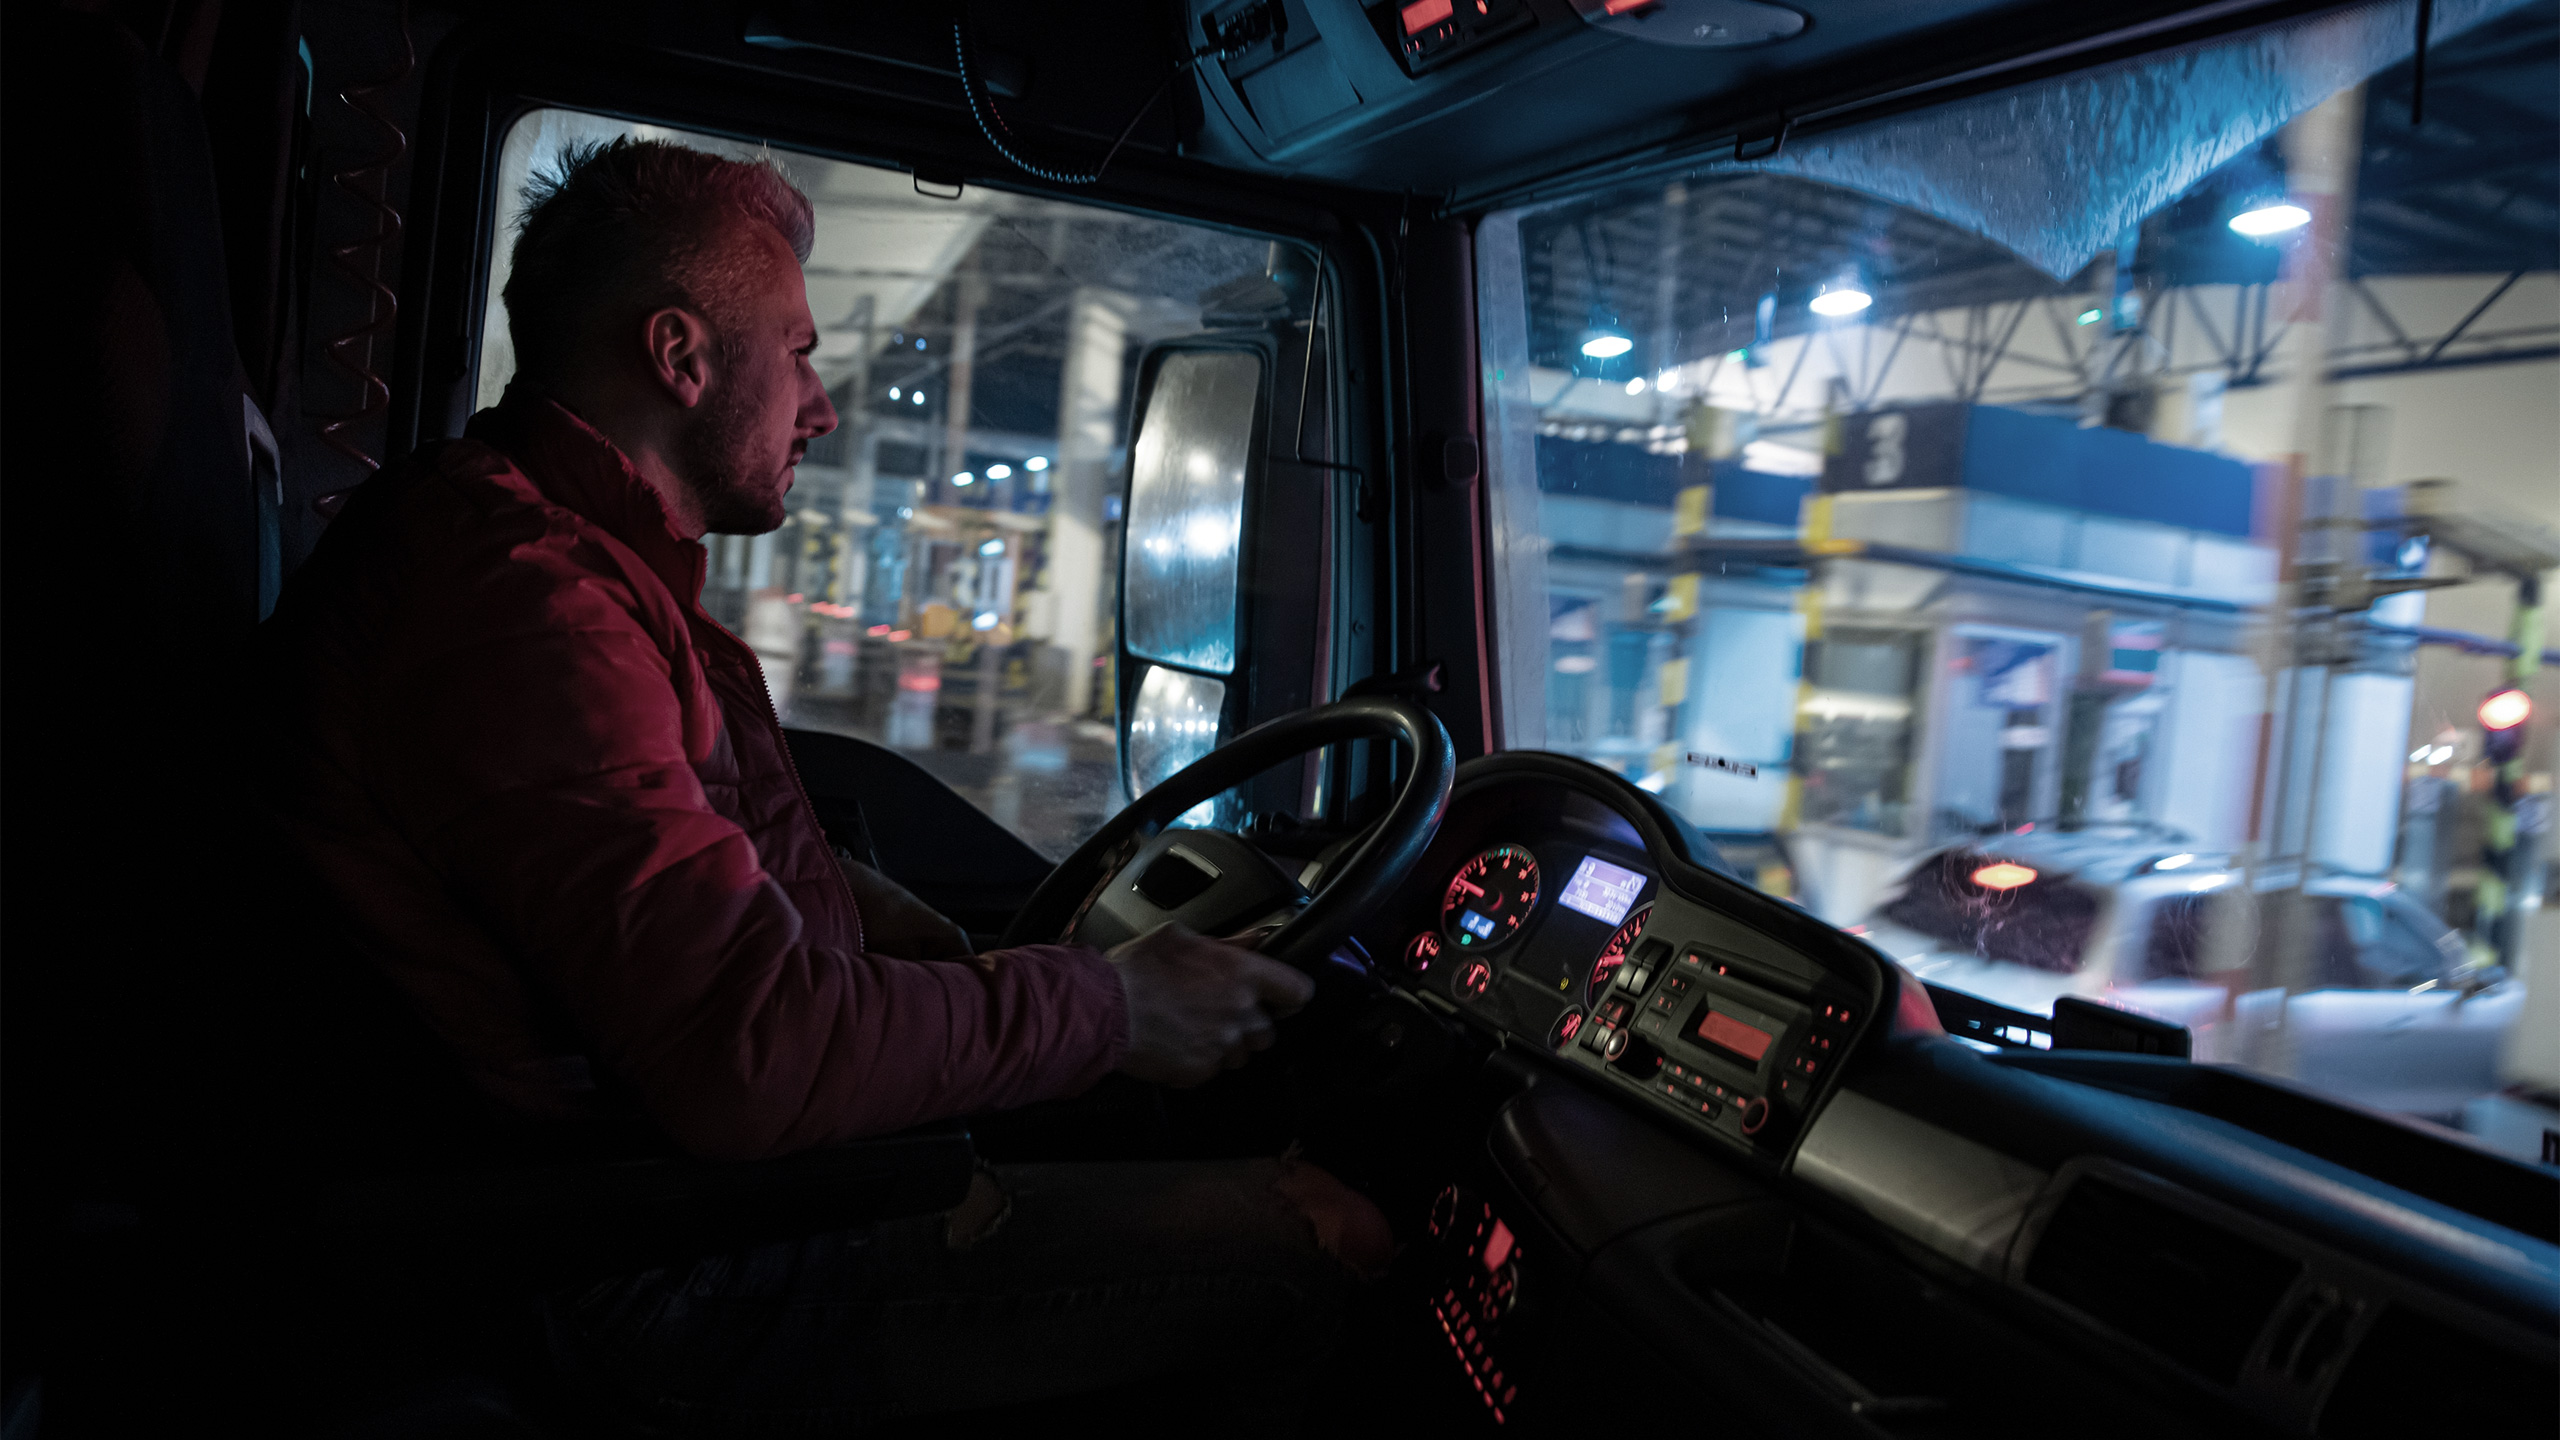 [Translate to Französisch:] LKW Fahrer fährt bei Nacht